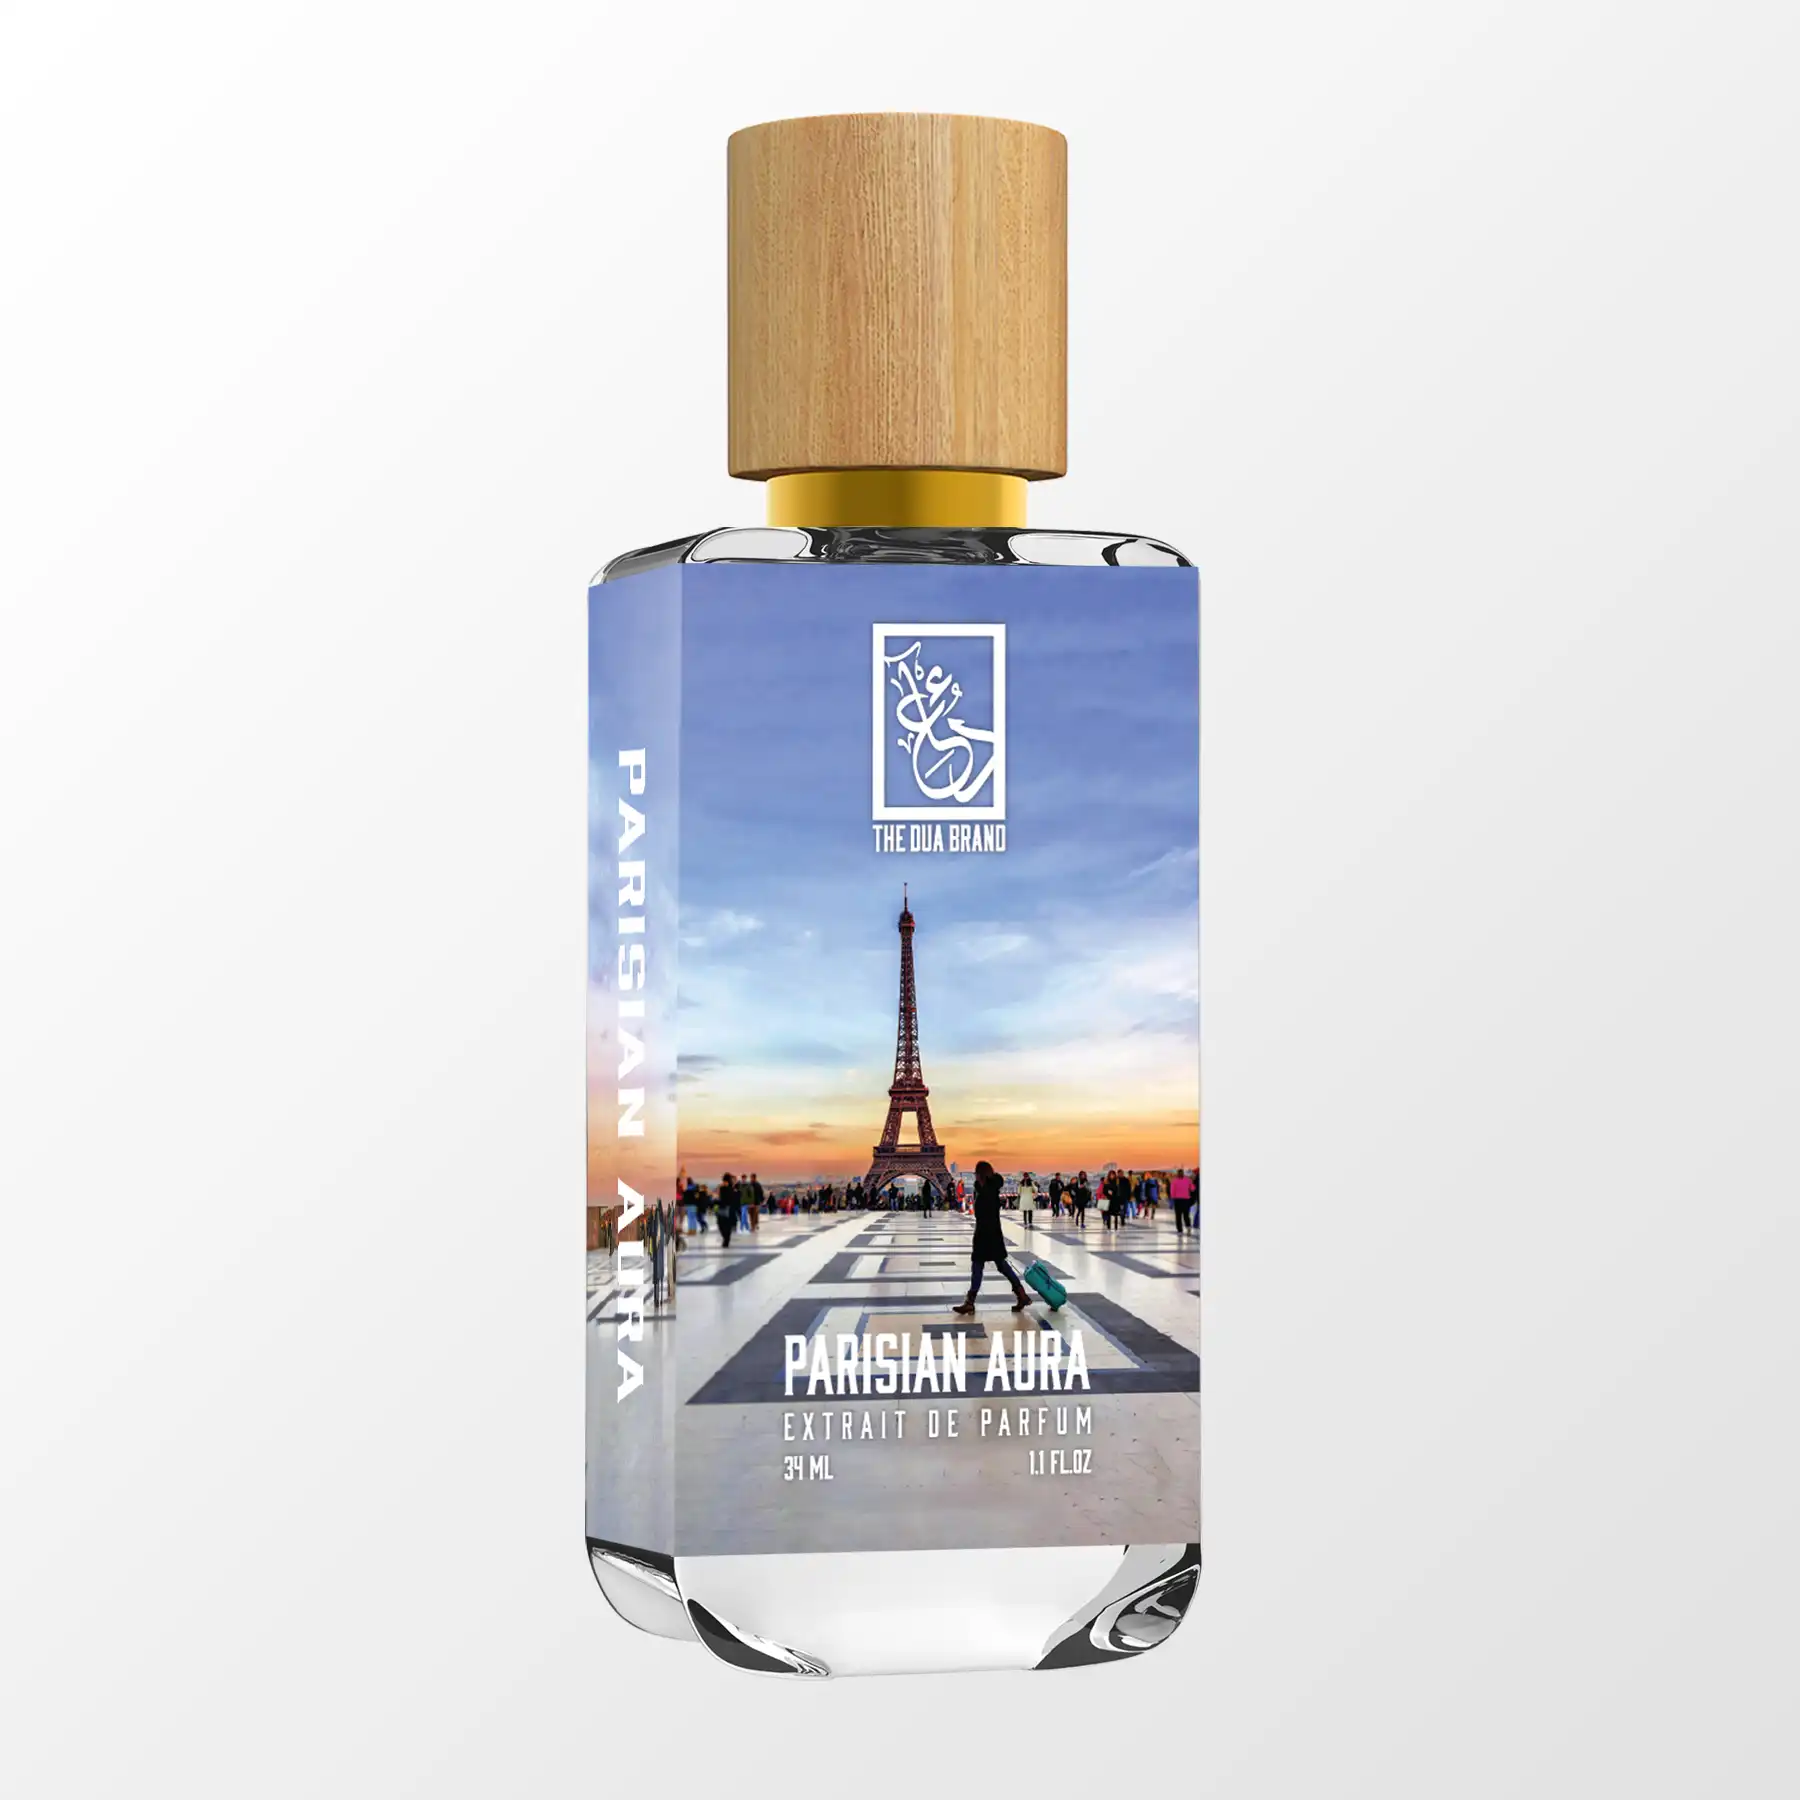 Parisian Aura - Dua Fragrances - Inspired by Gris Charnel Extrait BDK Parfums - Unisex Perfume - 34ml/1.1 fl oz - Extrait de Parfum